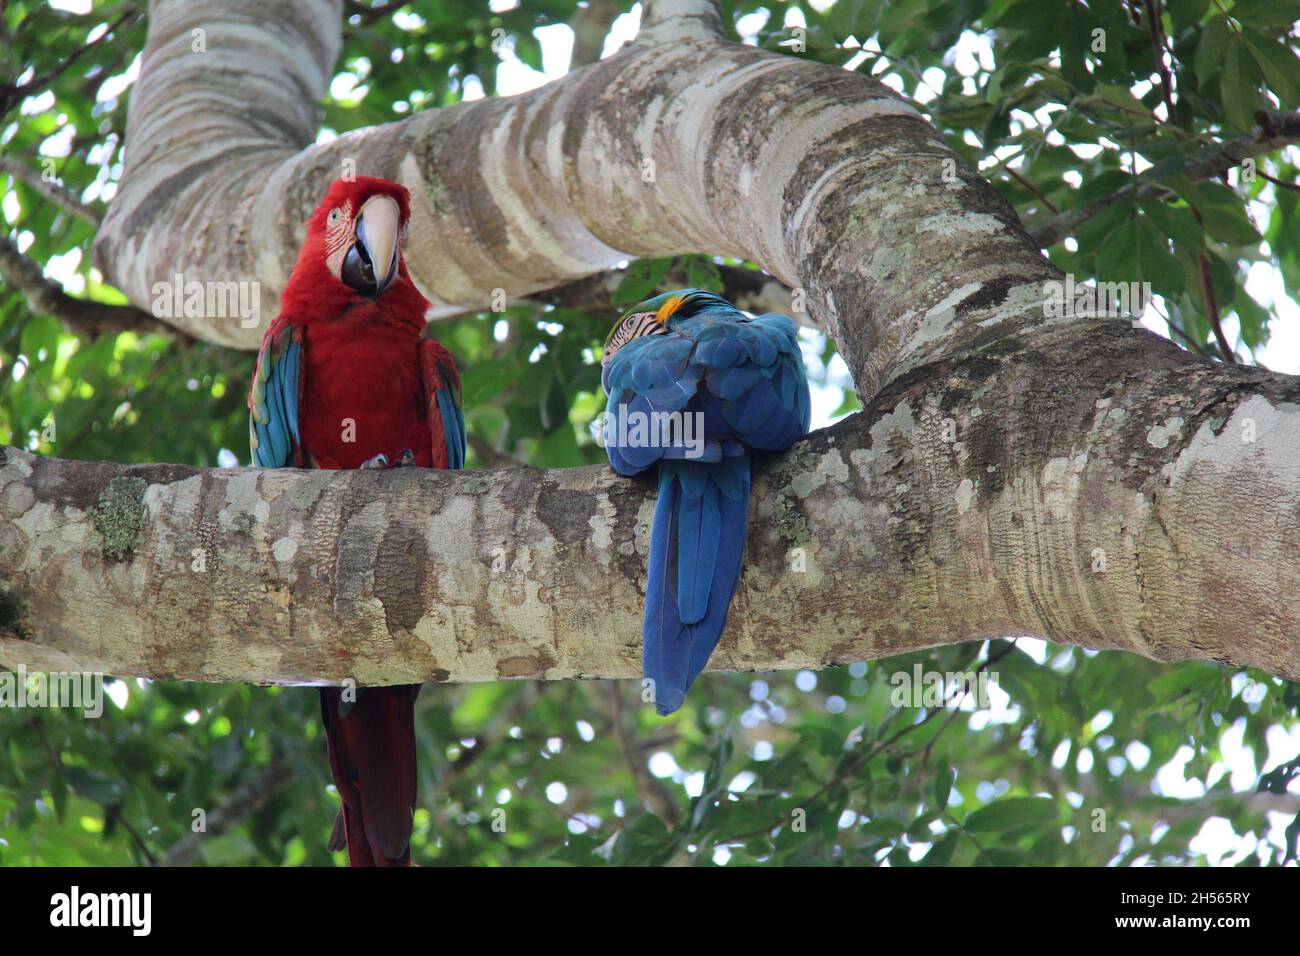 Couple de perroquets de macaw rouge et bleu perchés sur une branche d'arbre à Bonito - Mato Grosso do Sul - Brésil. Banque D'Images